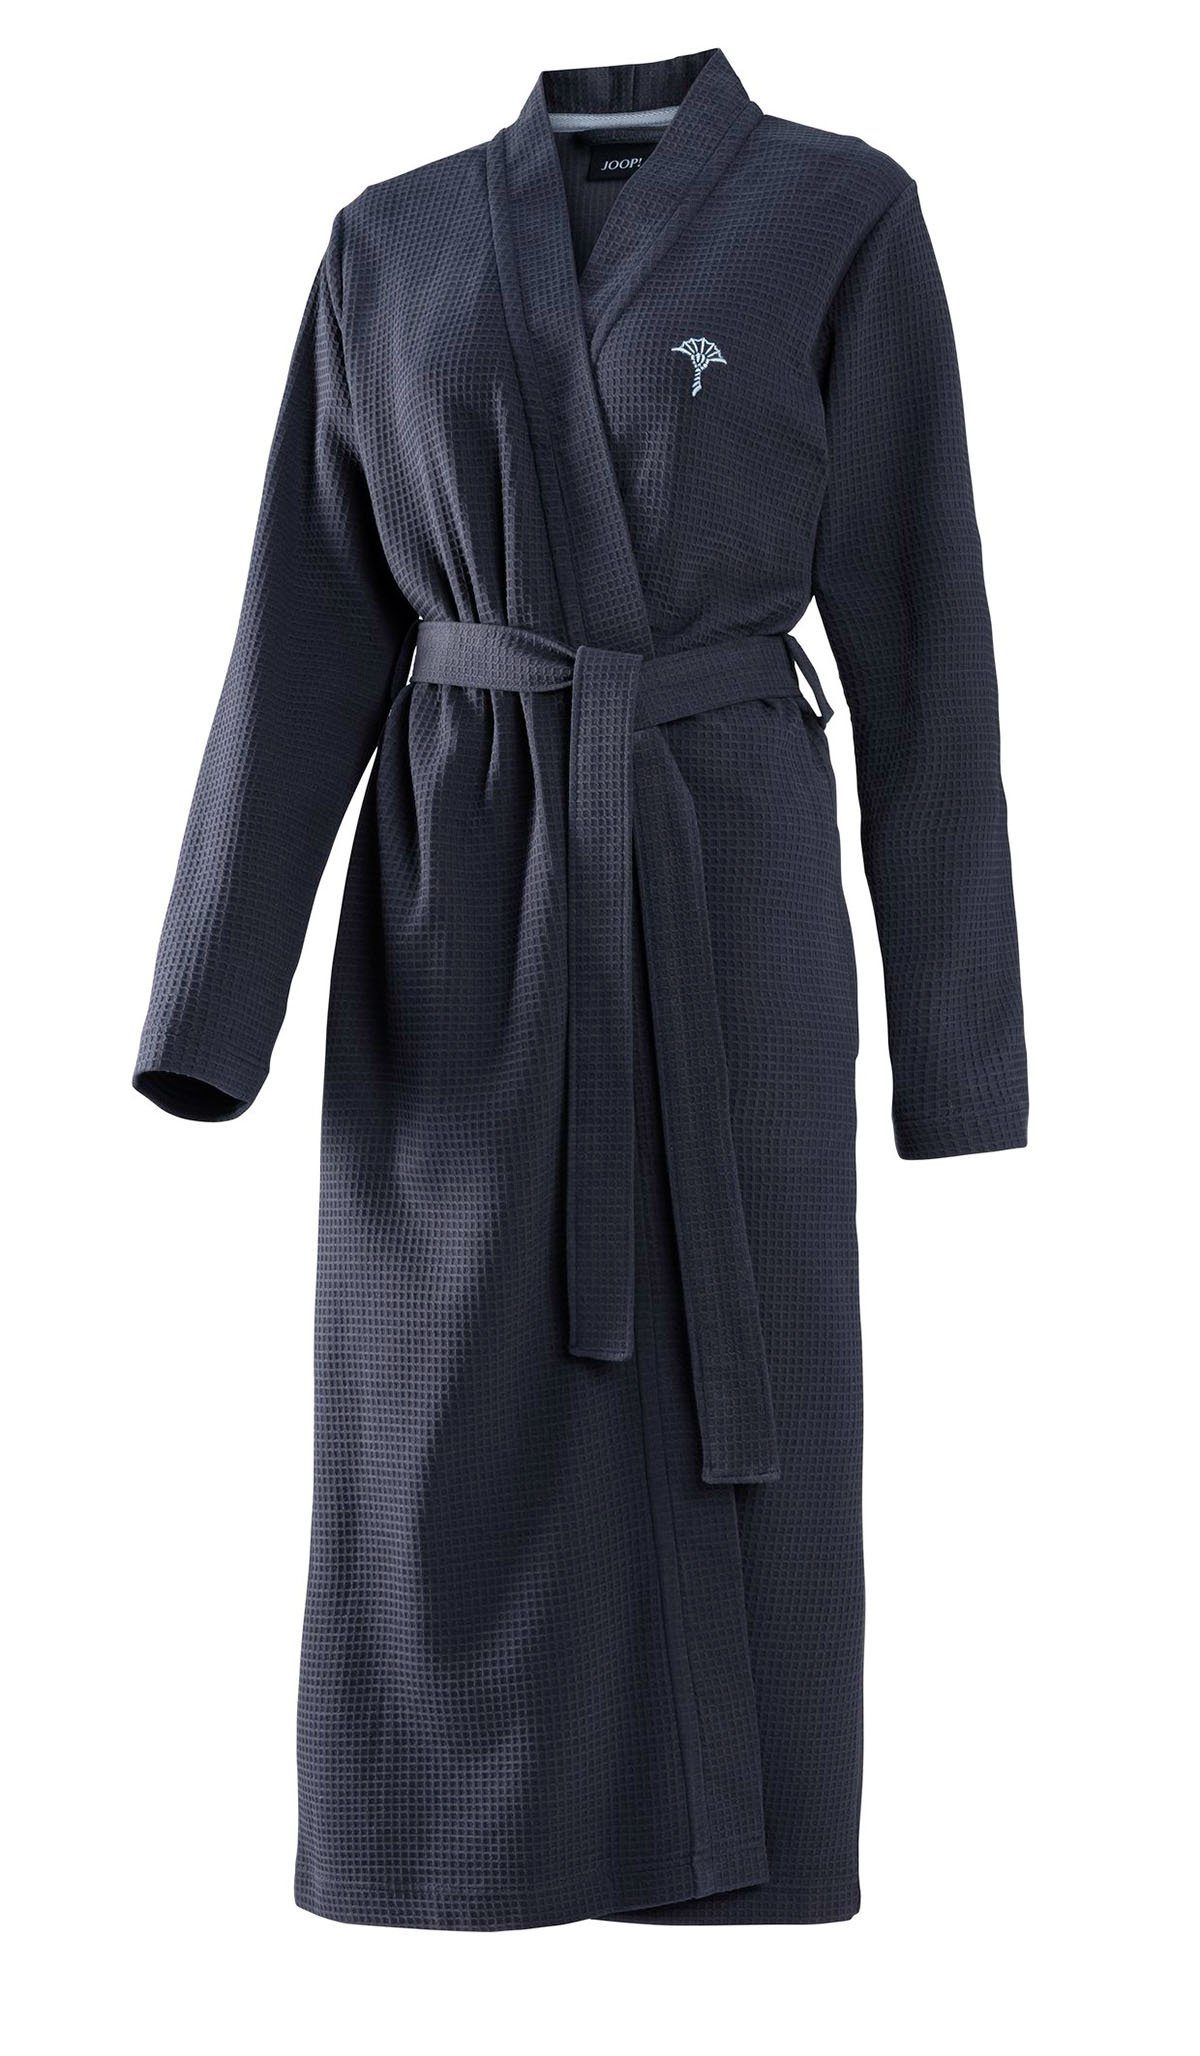 Joop! Damenbademantel Pique 1657 Kimono Pique, Kimono, 100% Baumwolle, JOOP!  Bademantel für Damen